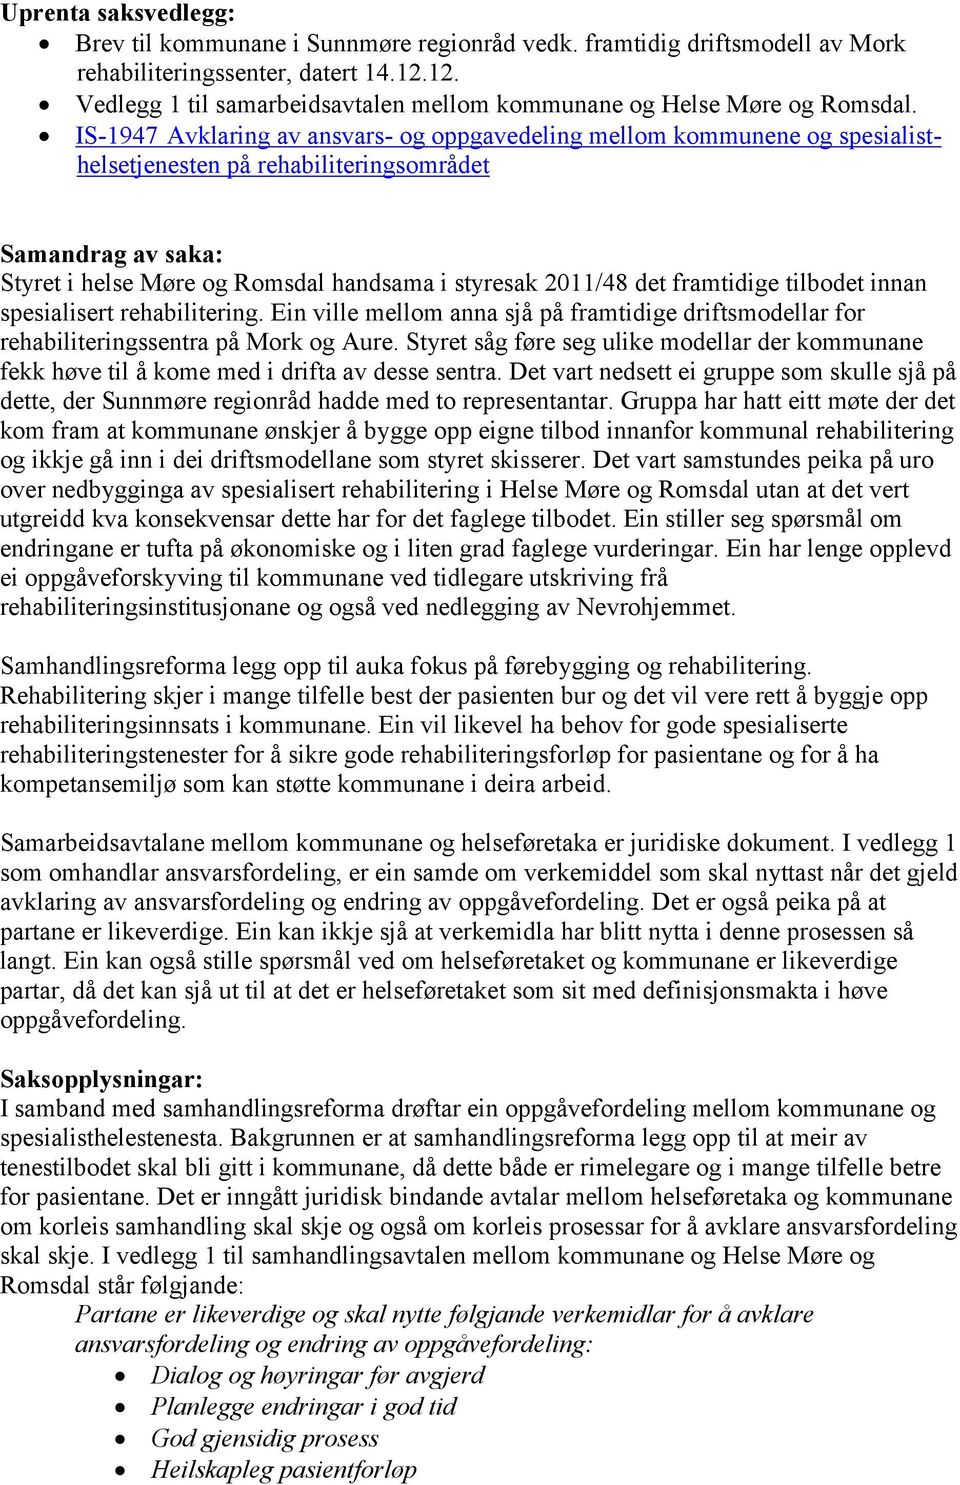 IS-1947 Avklaring av ansvars- og oppgavedeling mellom kommunene og spesialisthelsetjenesten på rehabiliteringsområdet Samandrag av saka: Styret i helse Møre og Romsdal handsama i styresak 2011/48 det